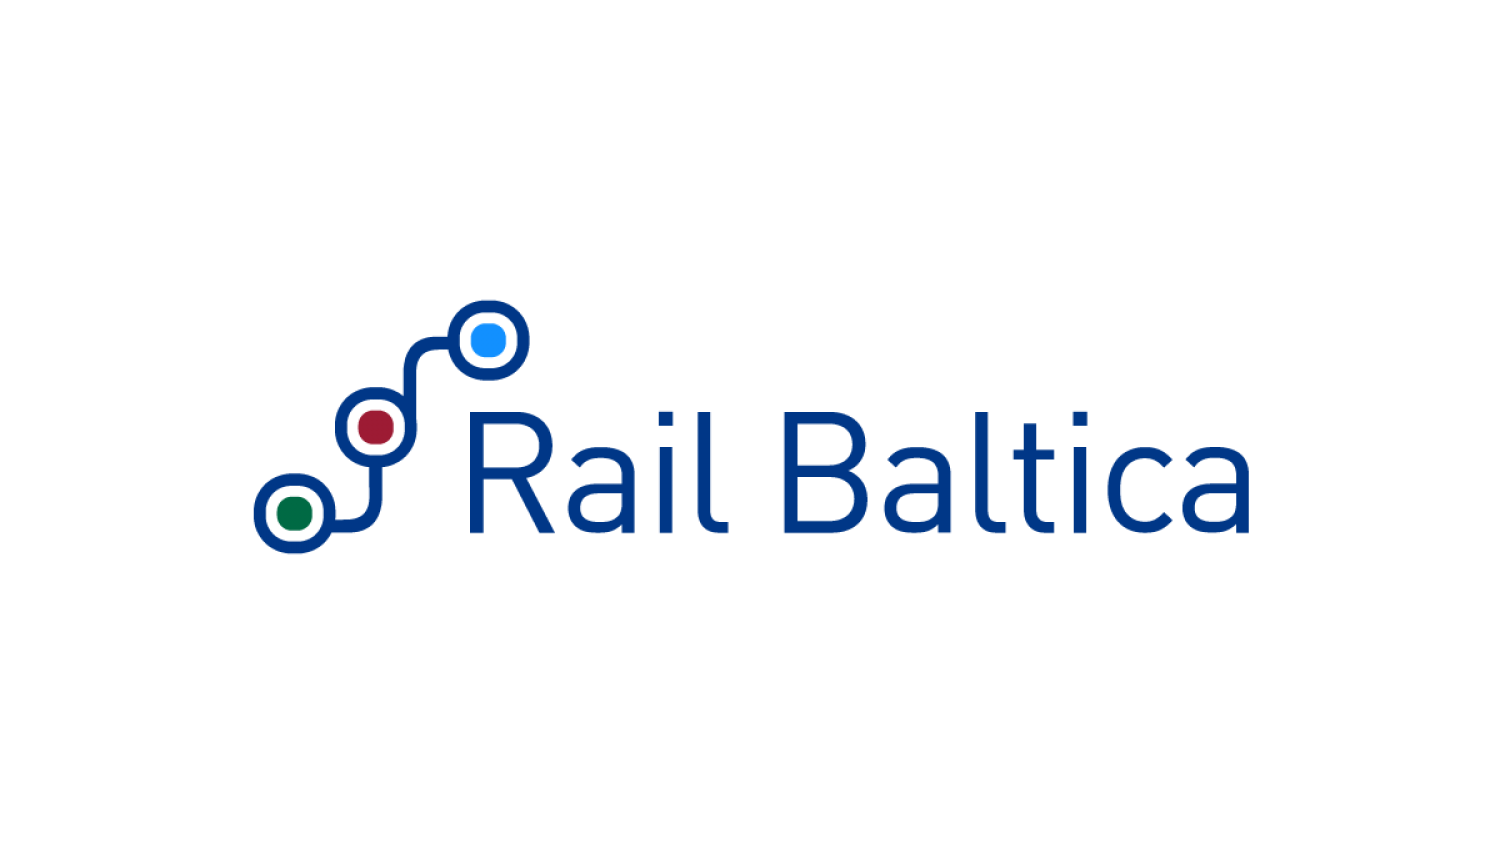 Pirms Rail Baltica projekta realizācijas aicinām Skultes pagasta iedzīvotājus iesniegt priekšlikumus par ceļu pārvadu risinājumiem Limbažu novadā